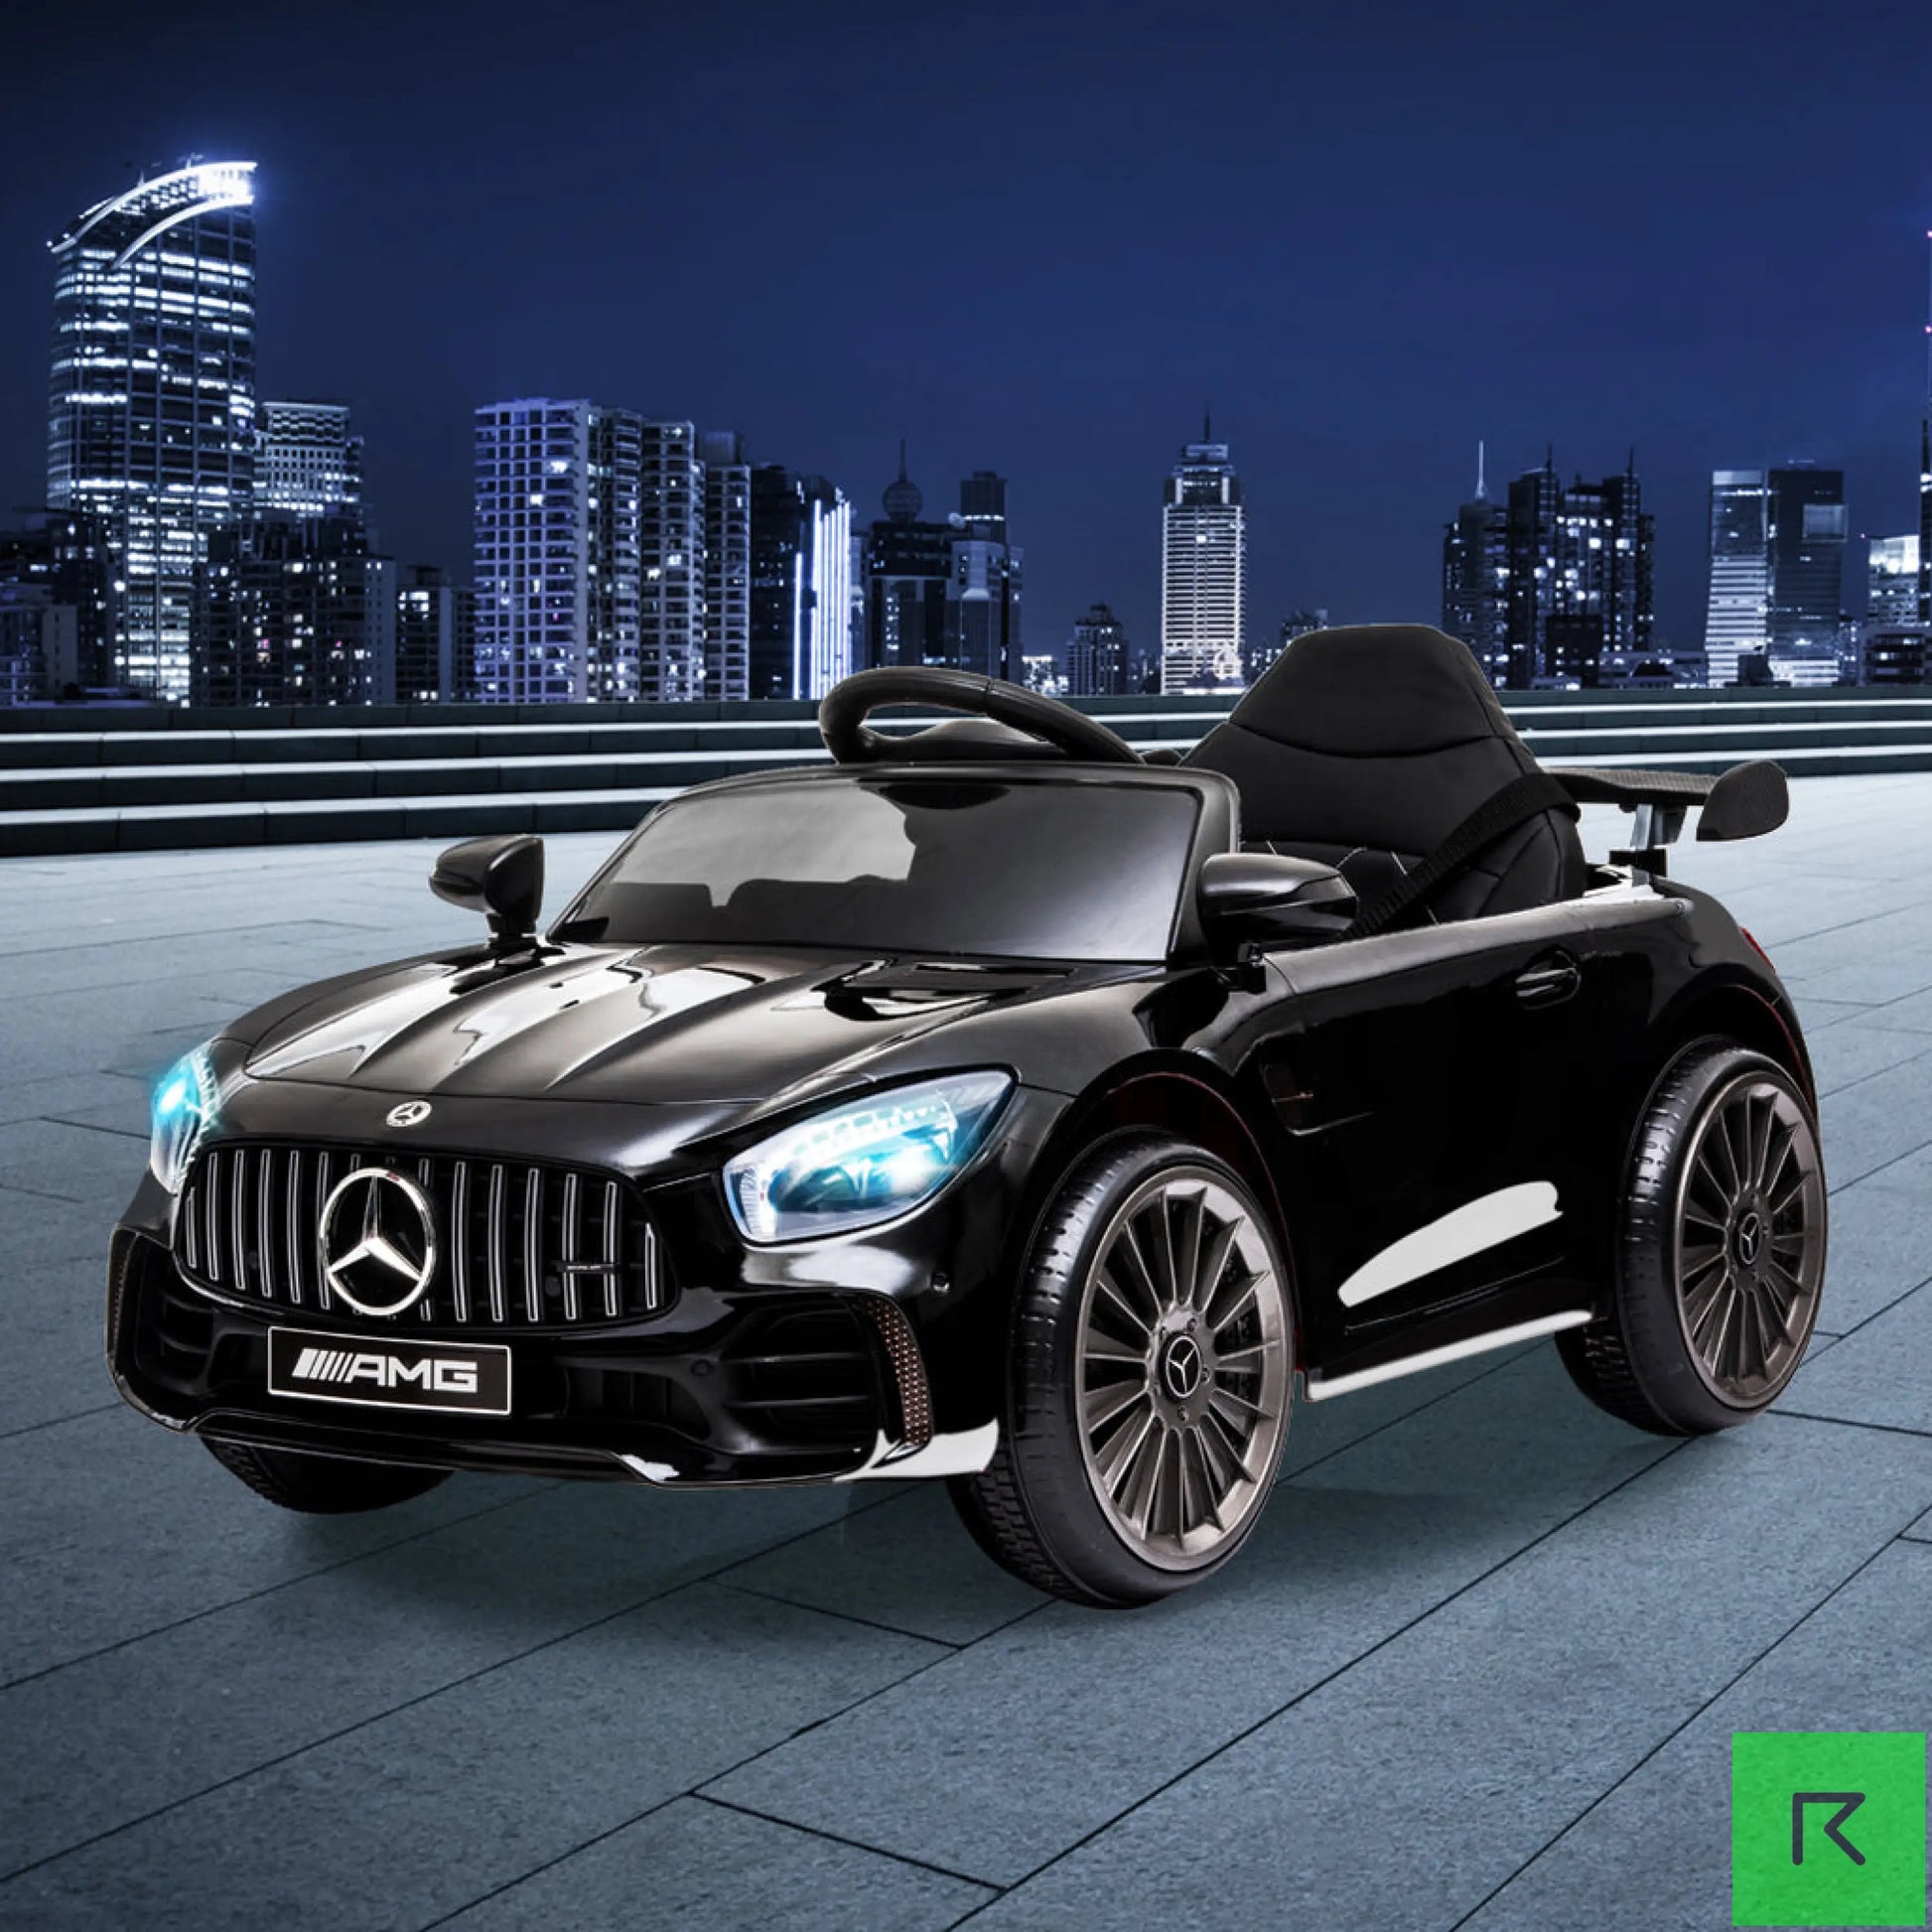 Kids Black 12 V AMG GTR Licensed Mercedes-Benz Ride On Electric Car - Ride on car